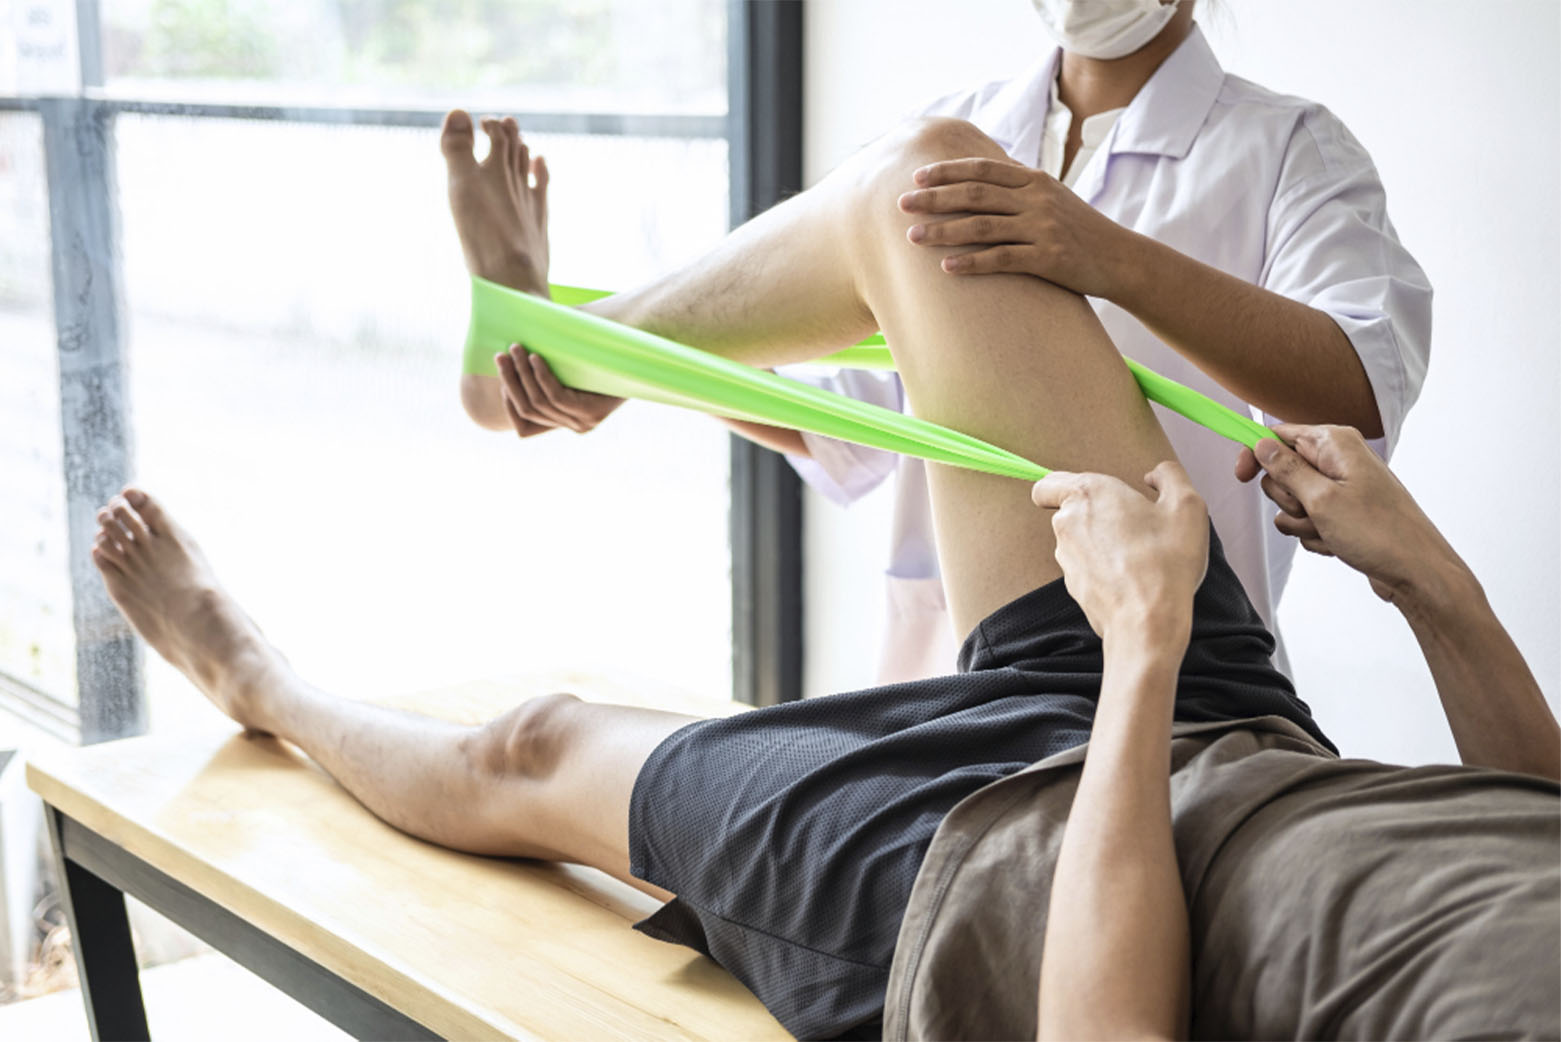 Featured image for “5 beneficios de la fisioterapia para tu salud”